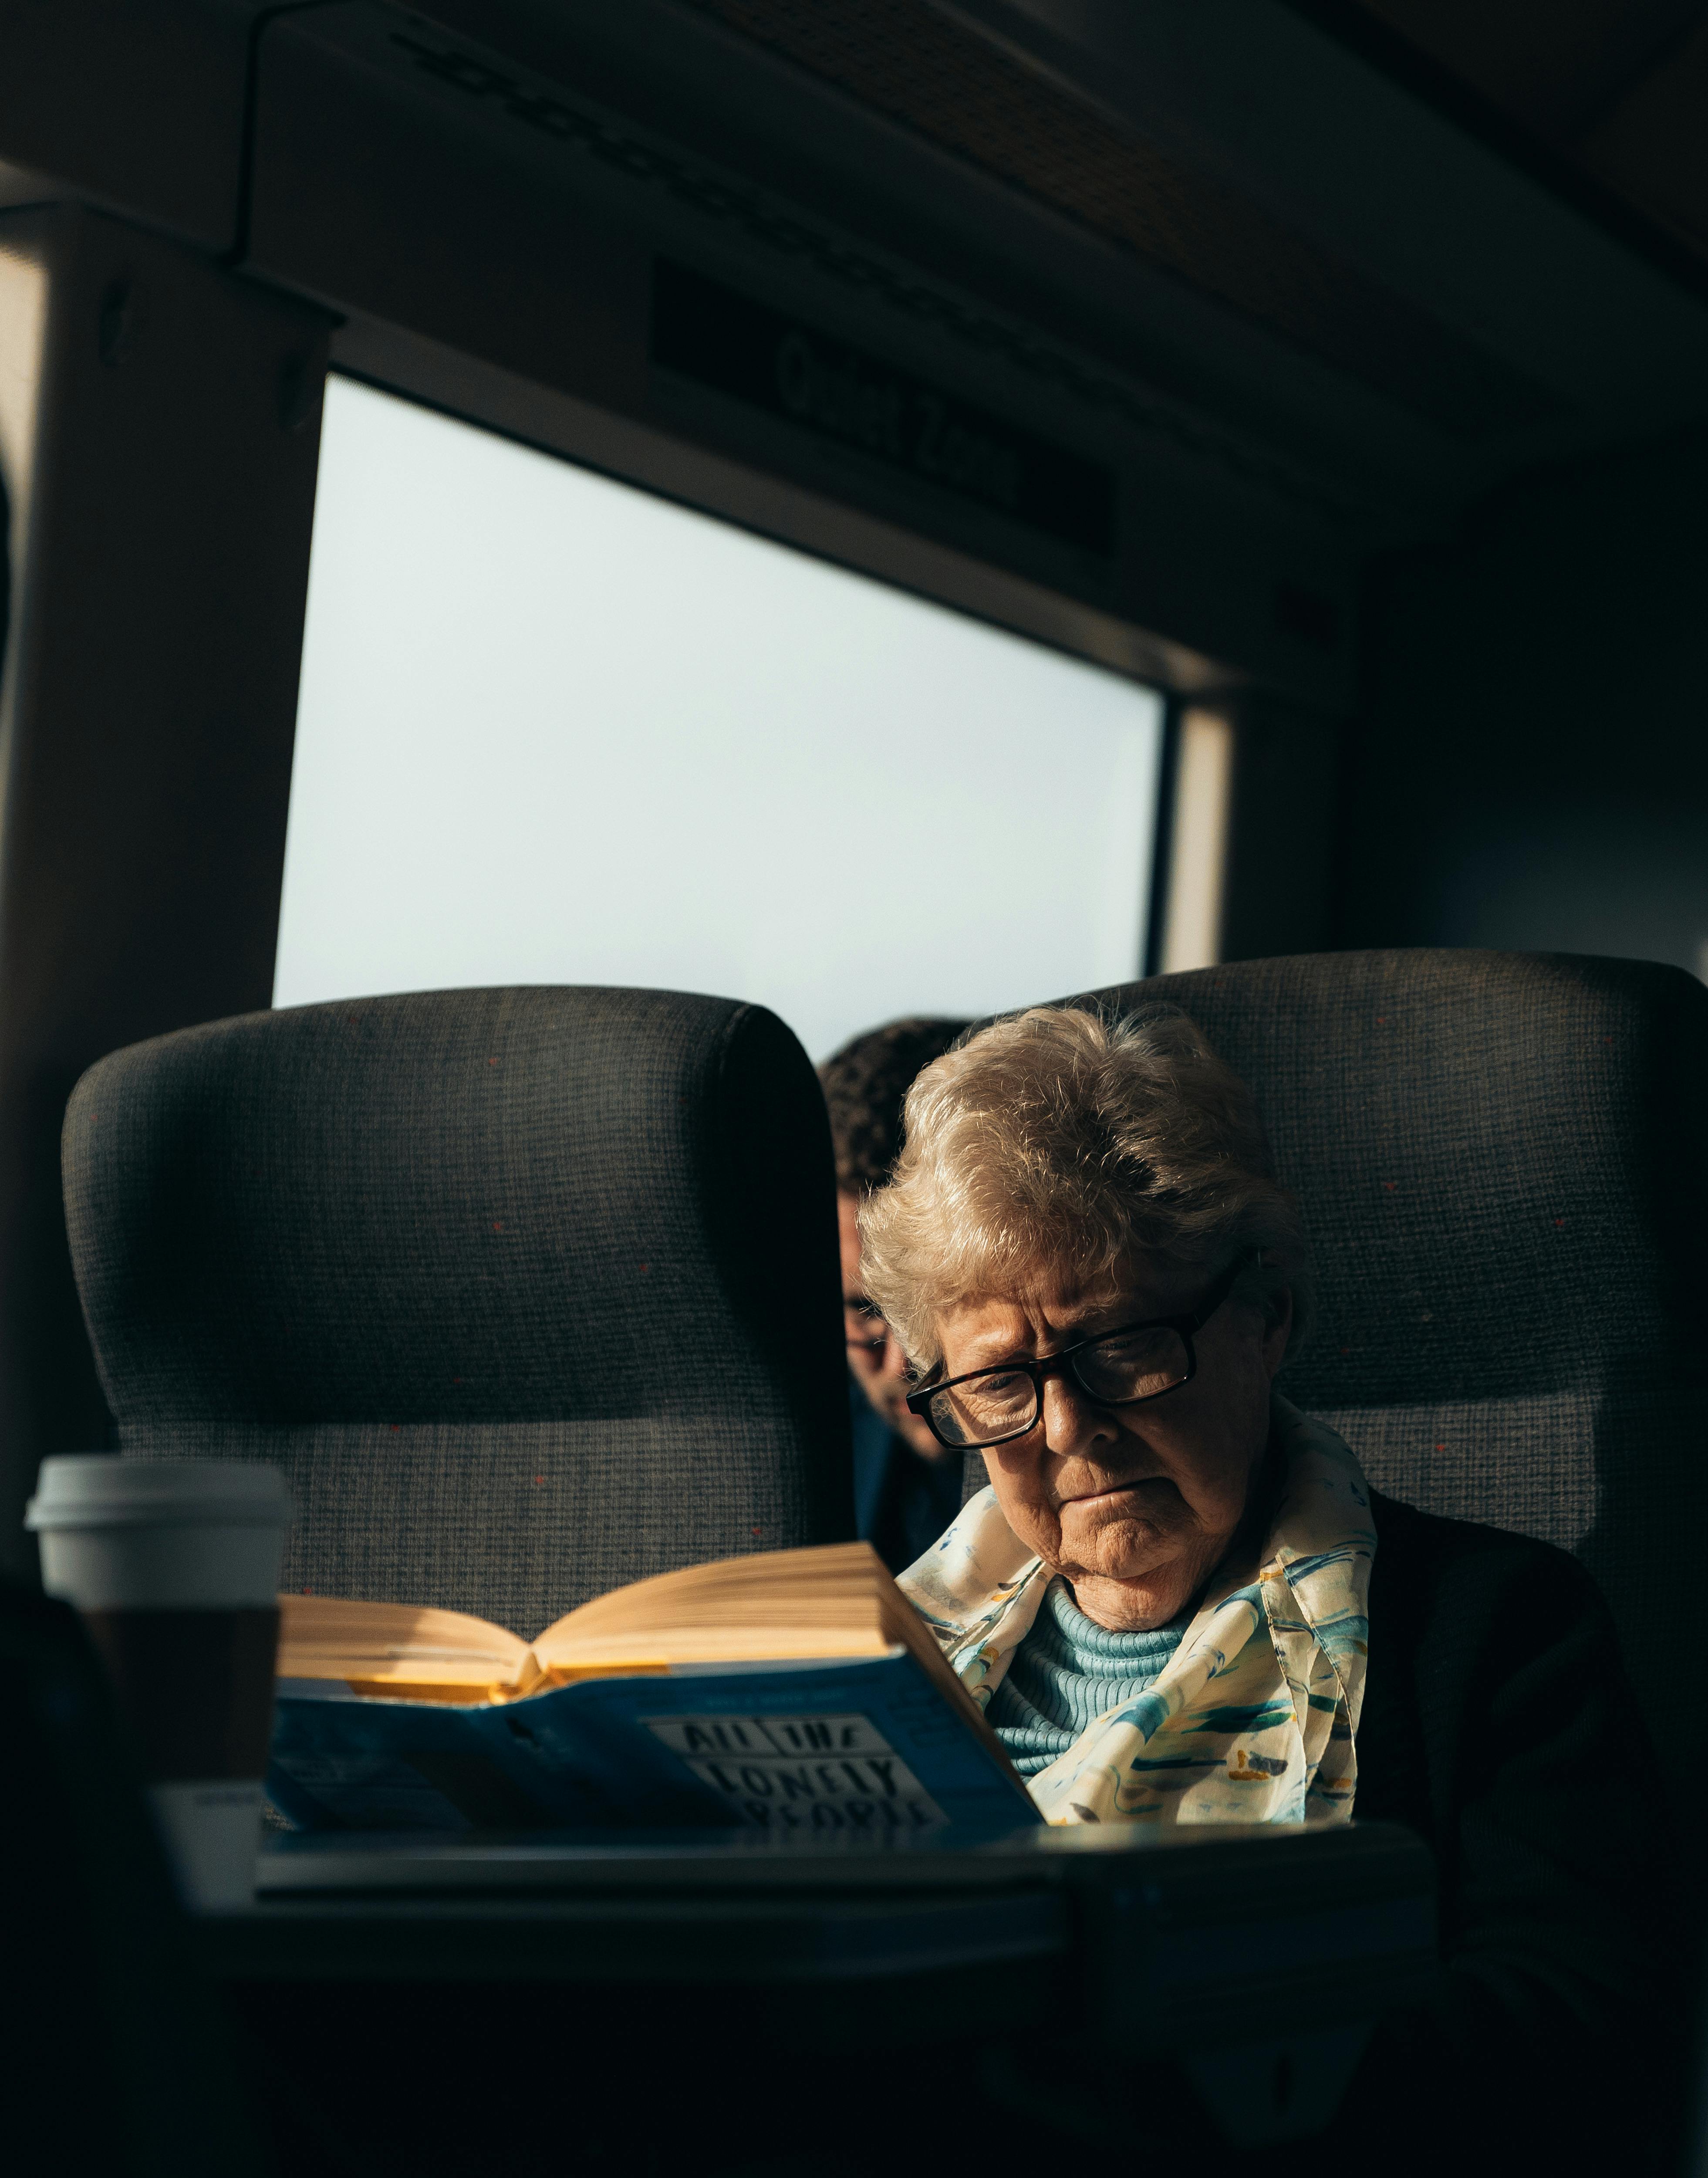 Eine ältere Frau, die ein Buch liest, während sie mit dem Zug reist | Quelle: Pexels